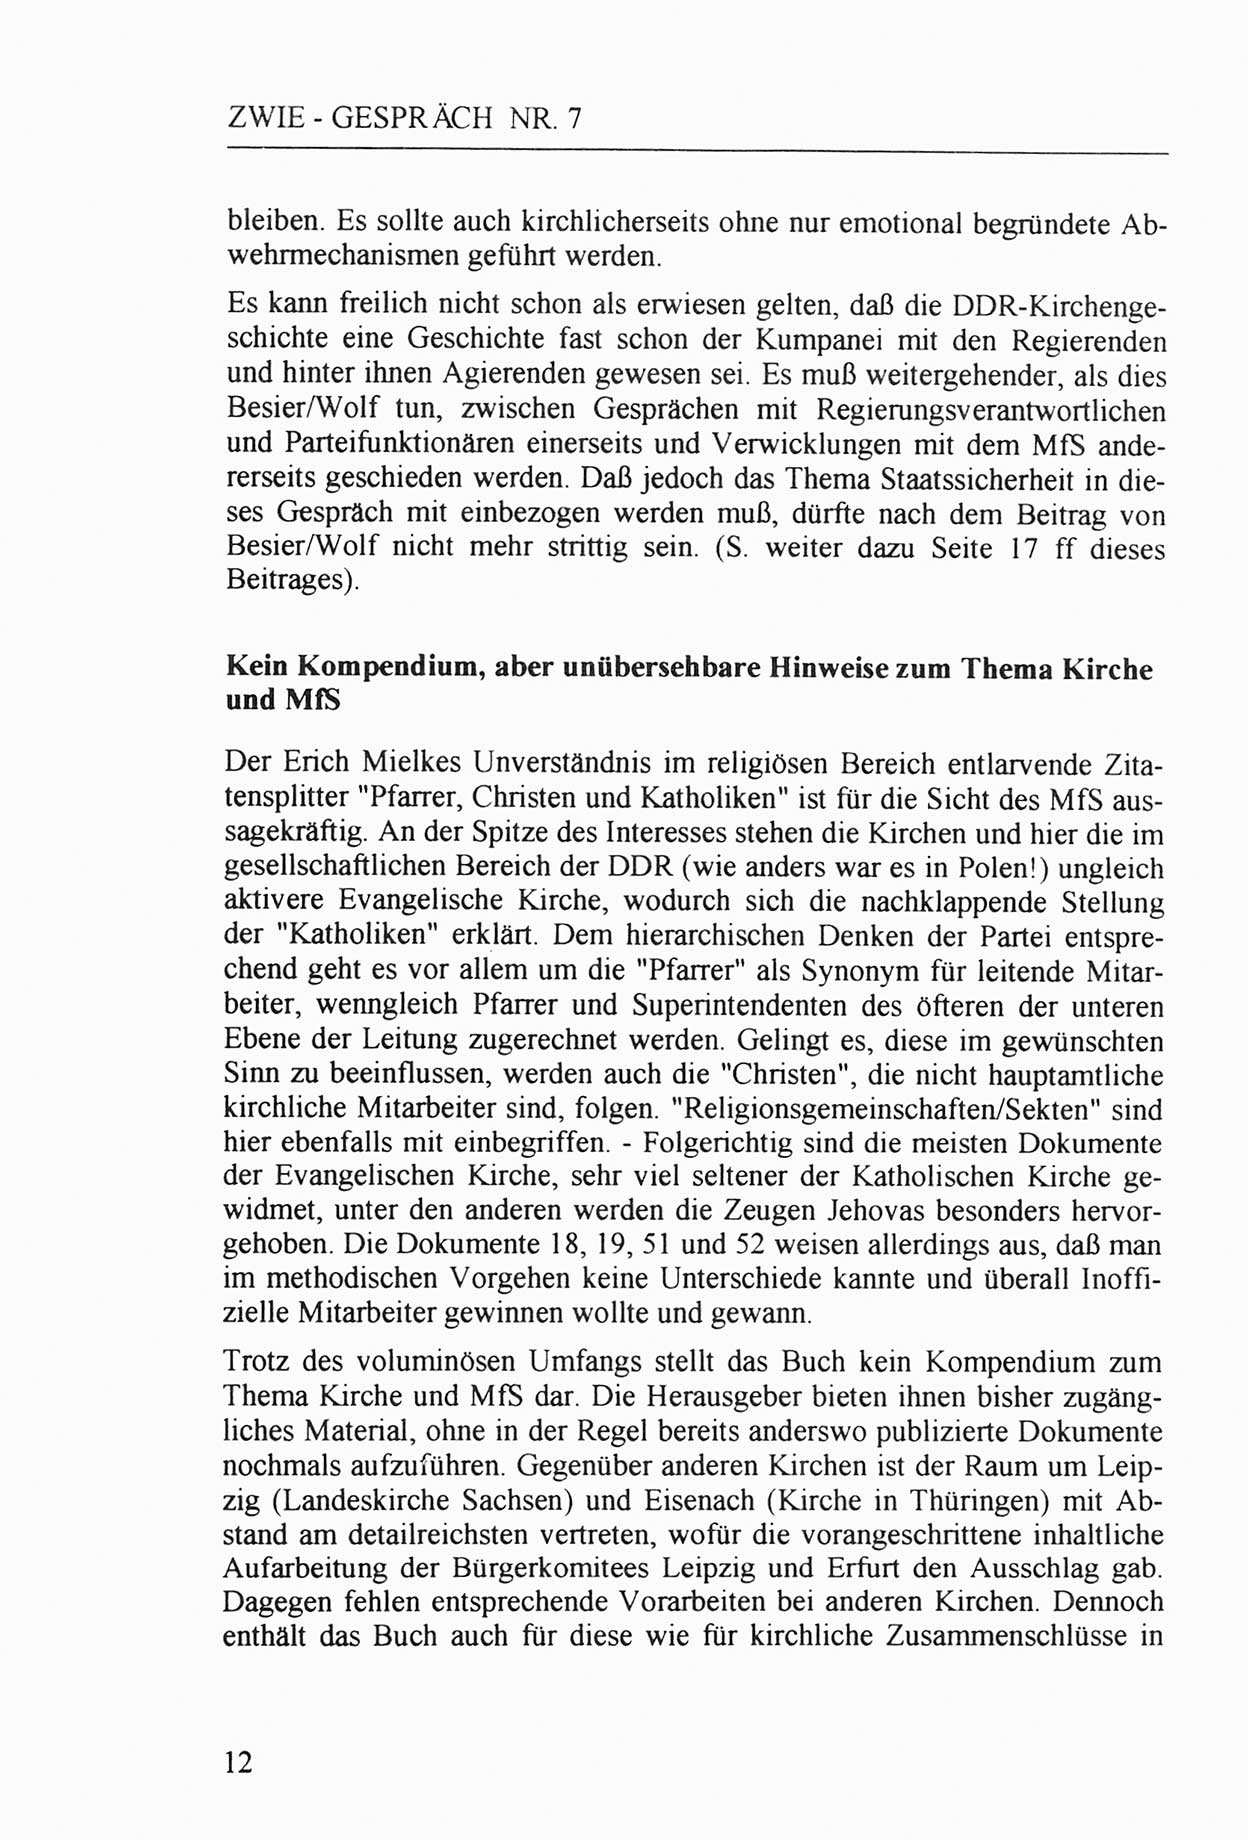 Zwie-Gespräch, Beiträge zur Aufarbeitung der Staatssicherheits-Vergangenheit [Deutsche Demokratische Republik (DDR)], Ausgabe Nr. 7, Berlin 1992, Seite 12 (Zwie-Gespr. Ausg. 7 1992, S. 12)